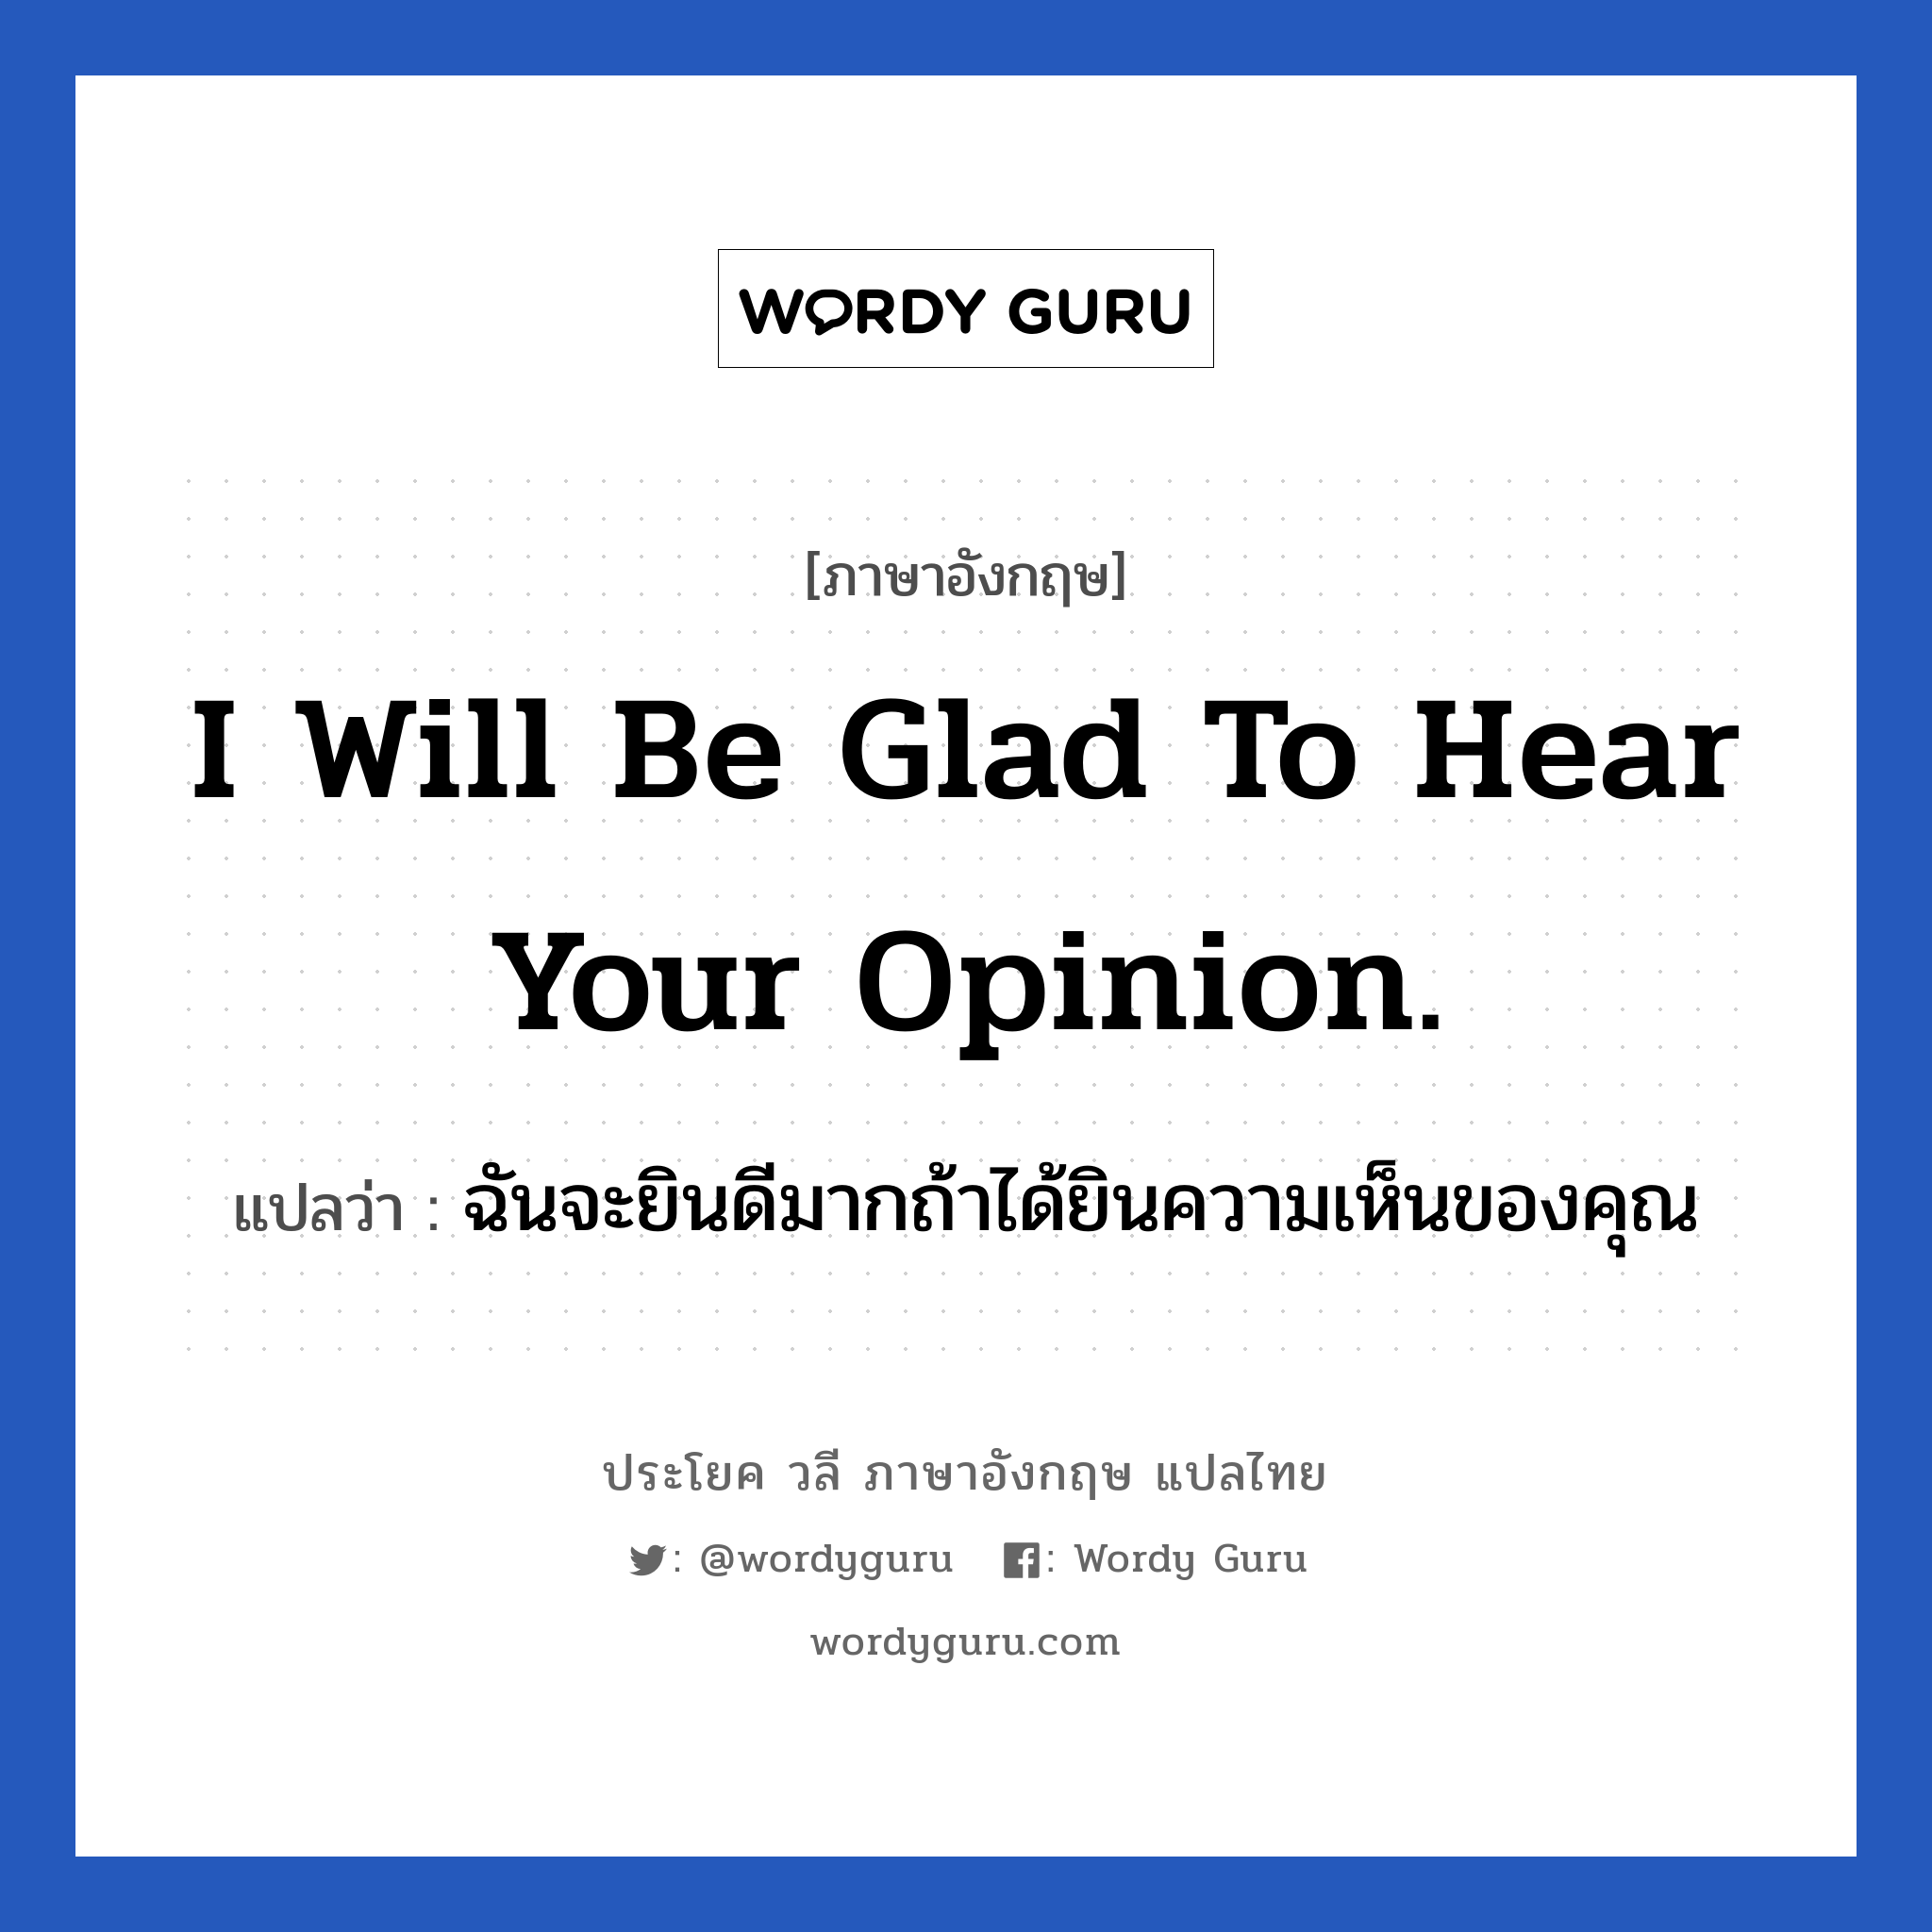 ฉันจะยินดีมากถ้าได้ยินความเห็นของคุณ ภาษาอังกฤษ?, วลีภาษาอังกฤษ ฉันจะยินดีมากถ้าได้ยินความเห็นของคุณ แปลว่า I will be glad to hear your opinion.